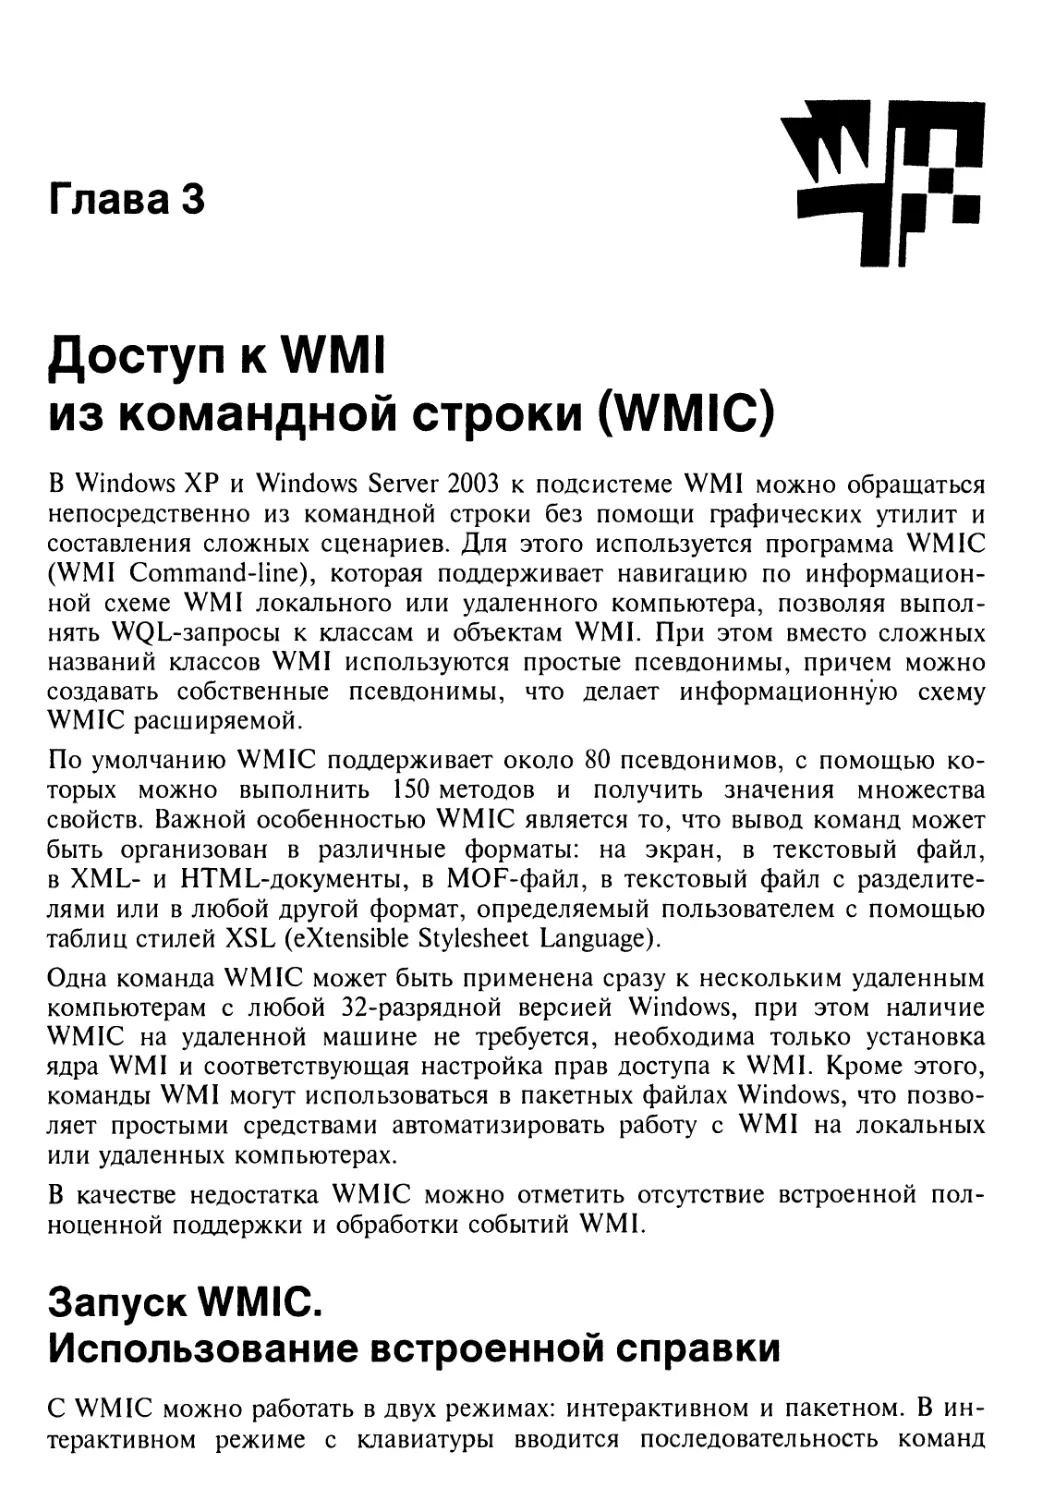 Запуск WMIC. Использование встроенной справки